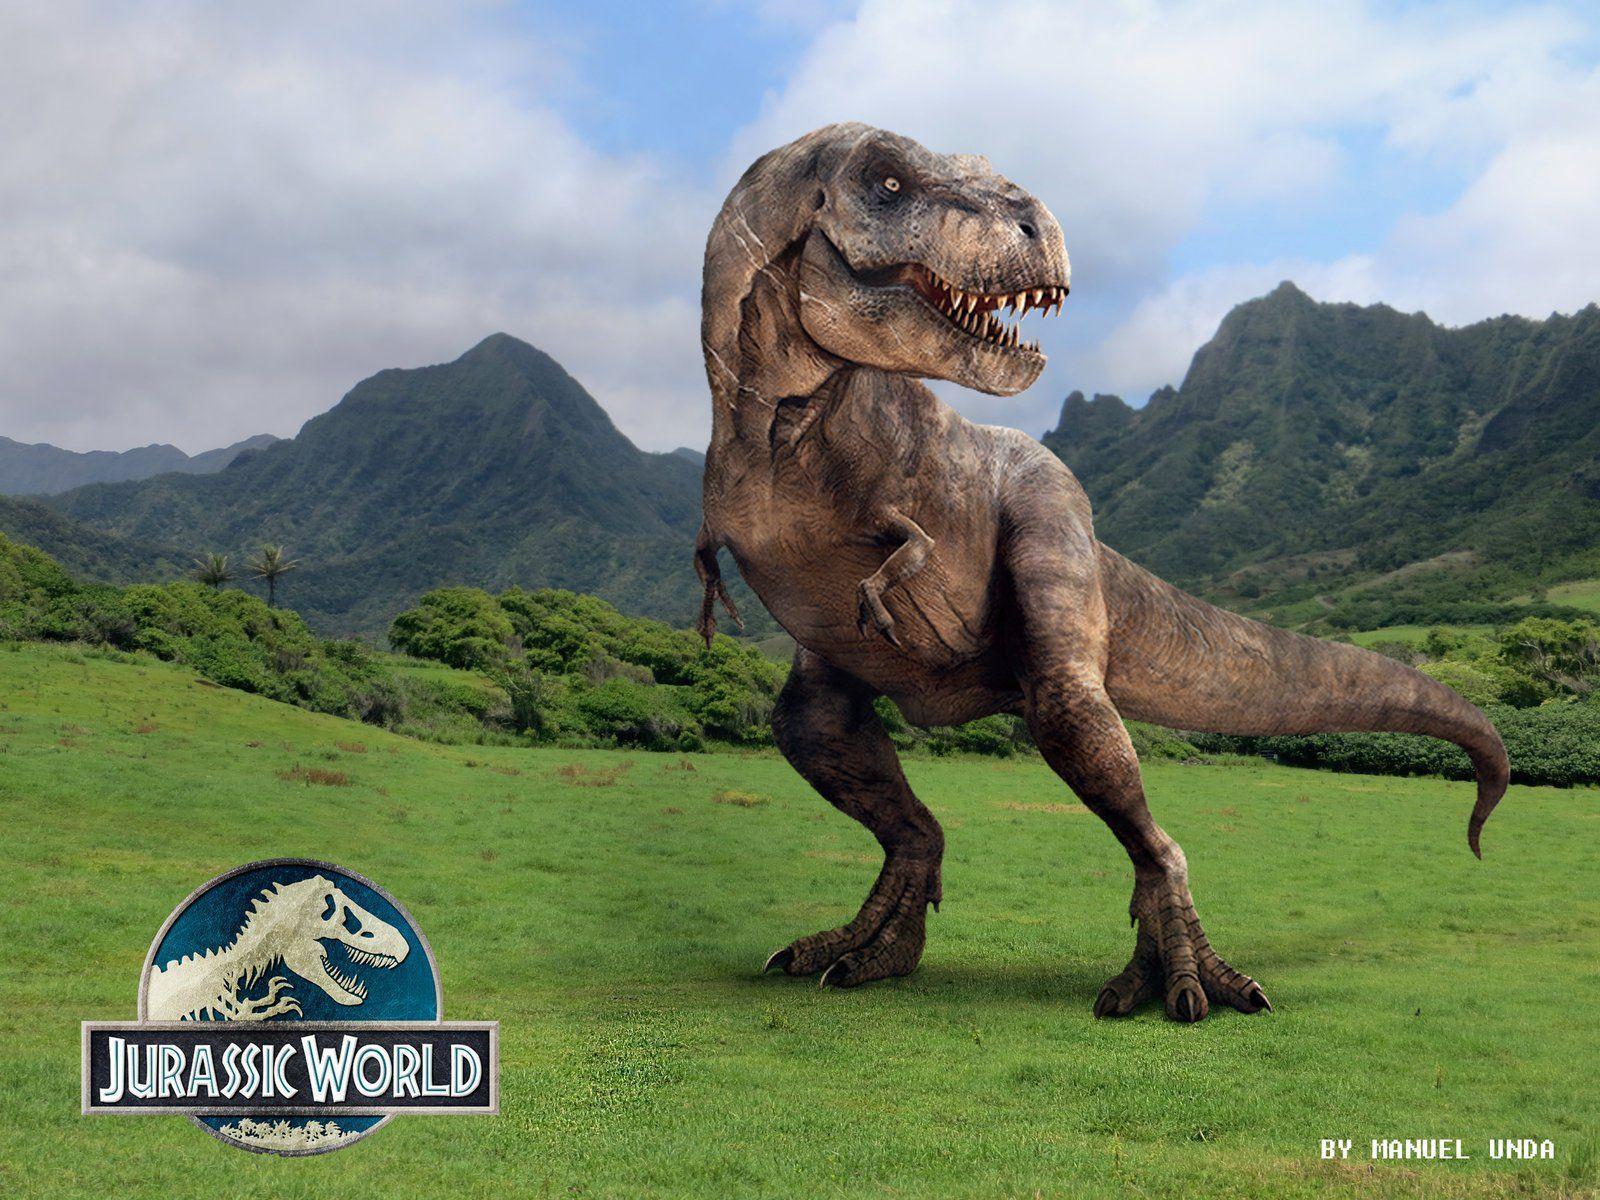 JURASSIC WORLD Adventure Sci Fi Dinosaur Fantasy Film 2015 Park 4